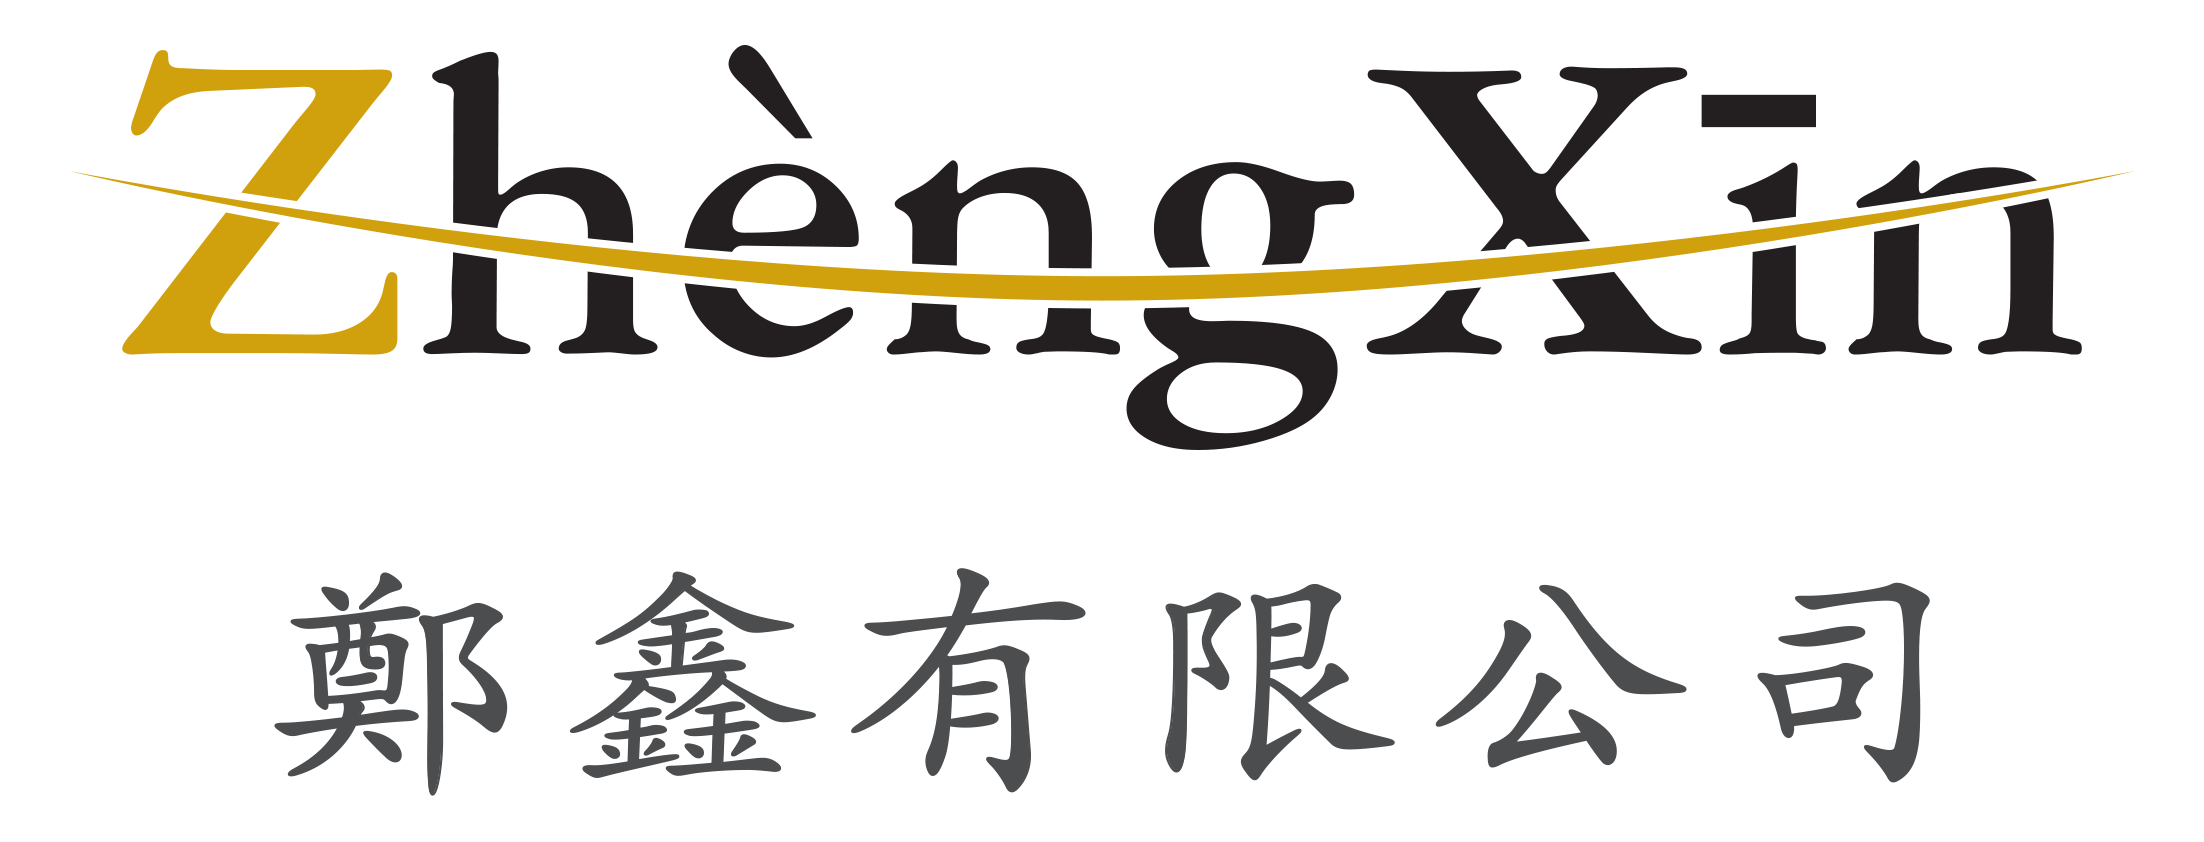 정흠유한공사(ZhengXin Co.,Ltd)의 기업로고